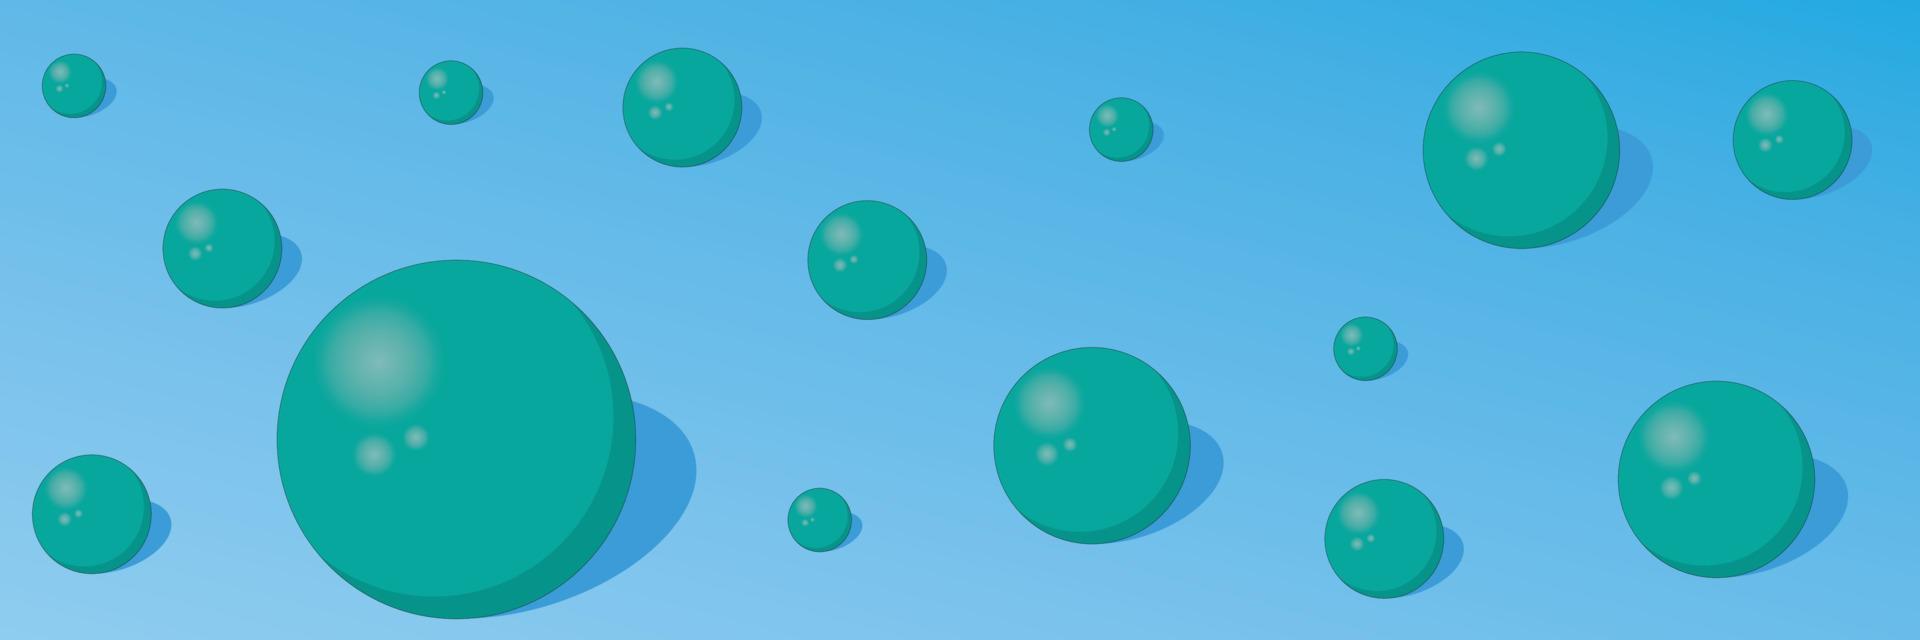 abstrakter hintergrund mit türkisfarbenen kugeln auf blauer farbhintergrundvektorillustration vektor